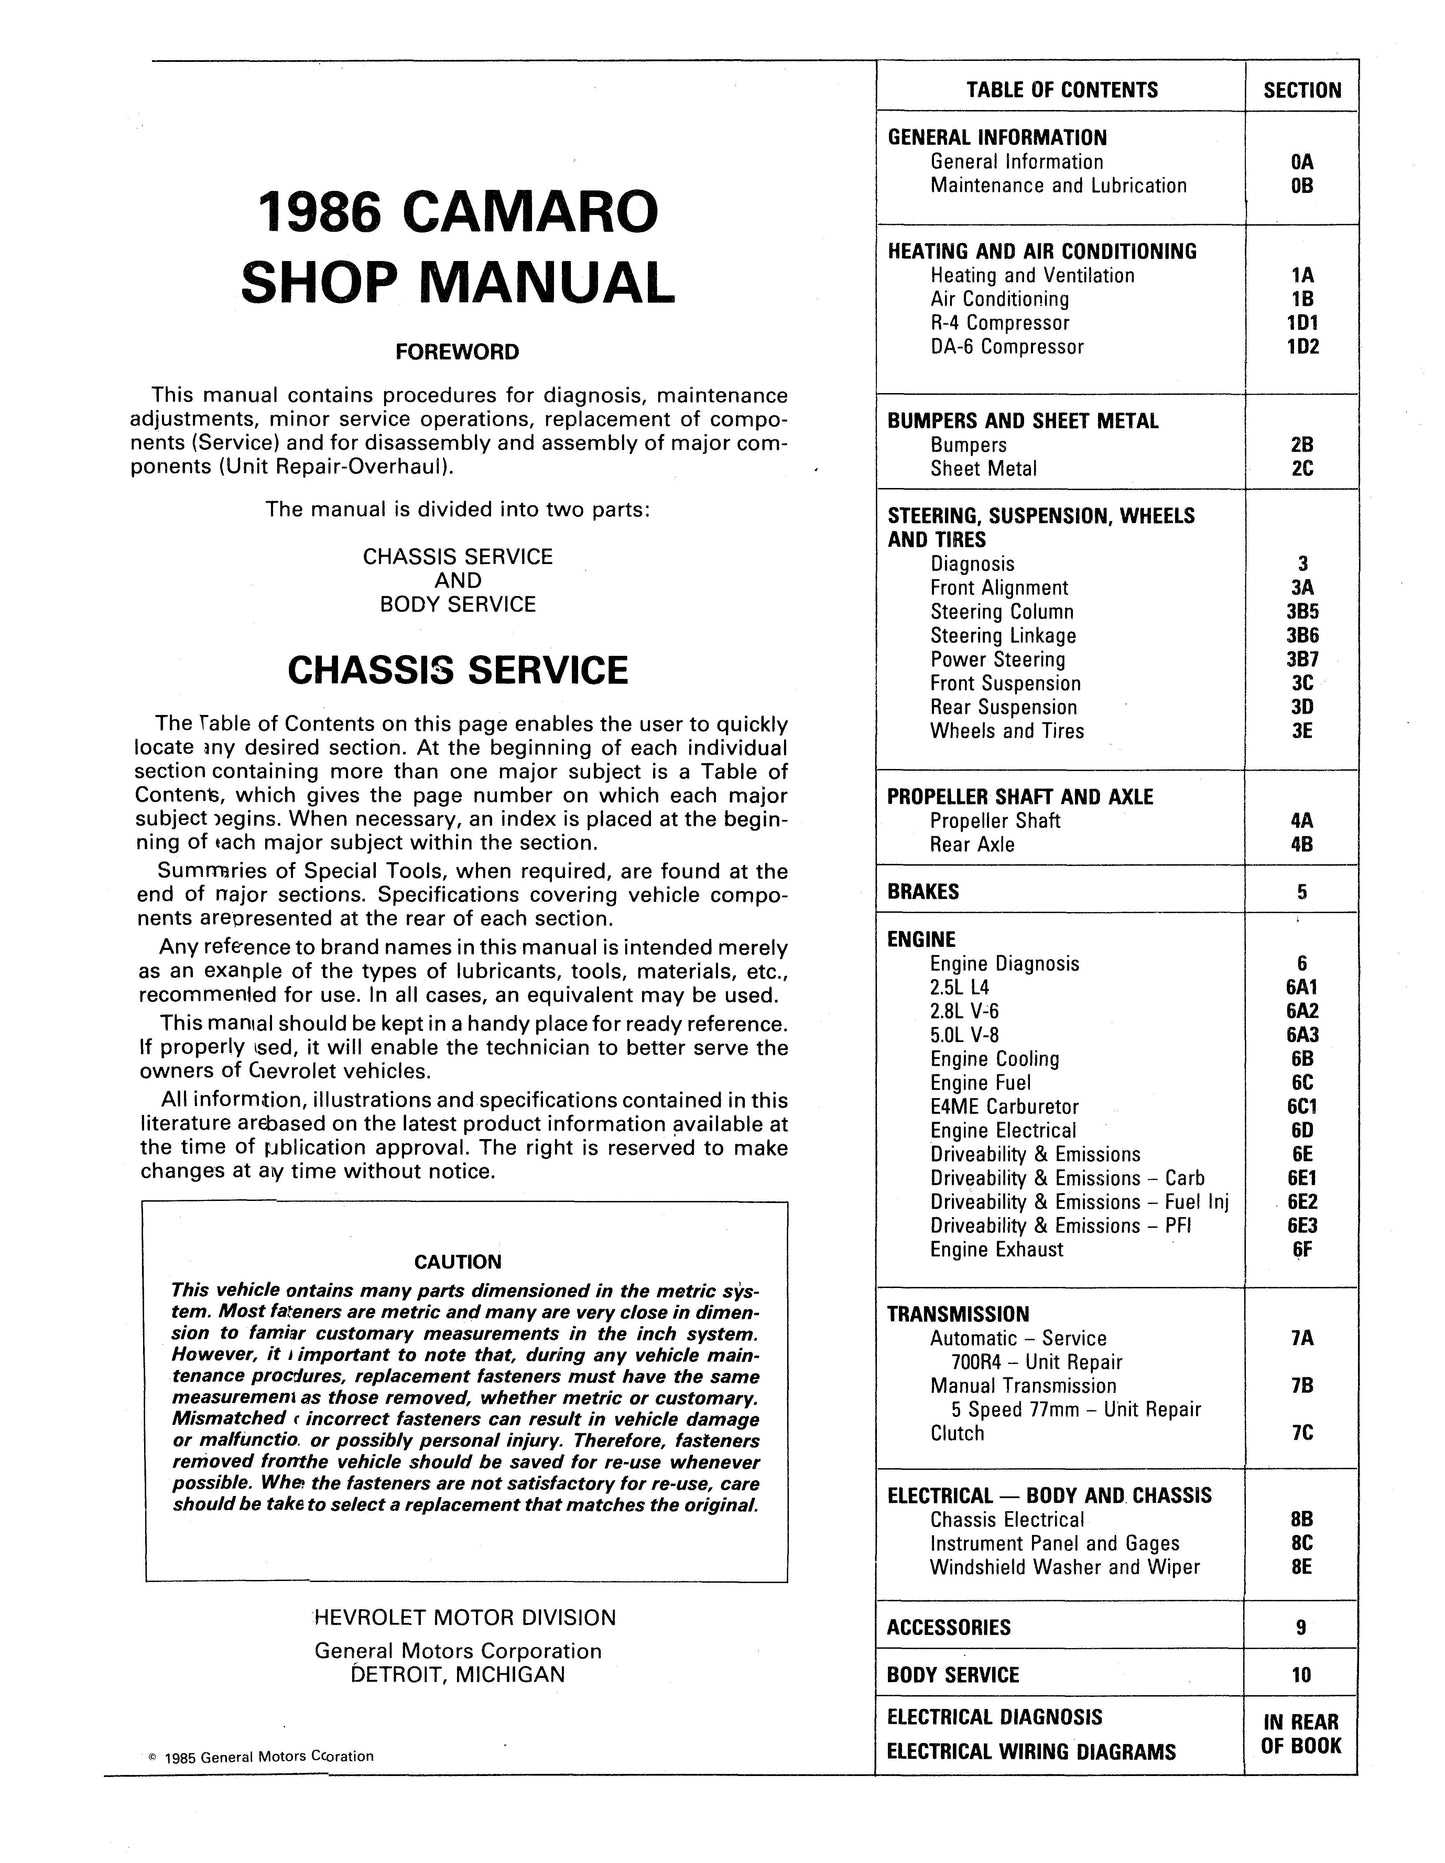 1986-1987 Chevrolet Camaro Shop Manuals